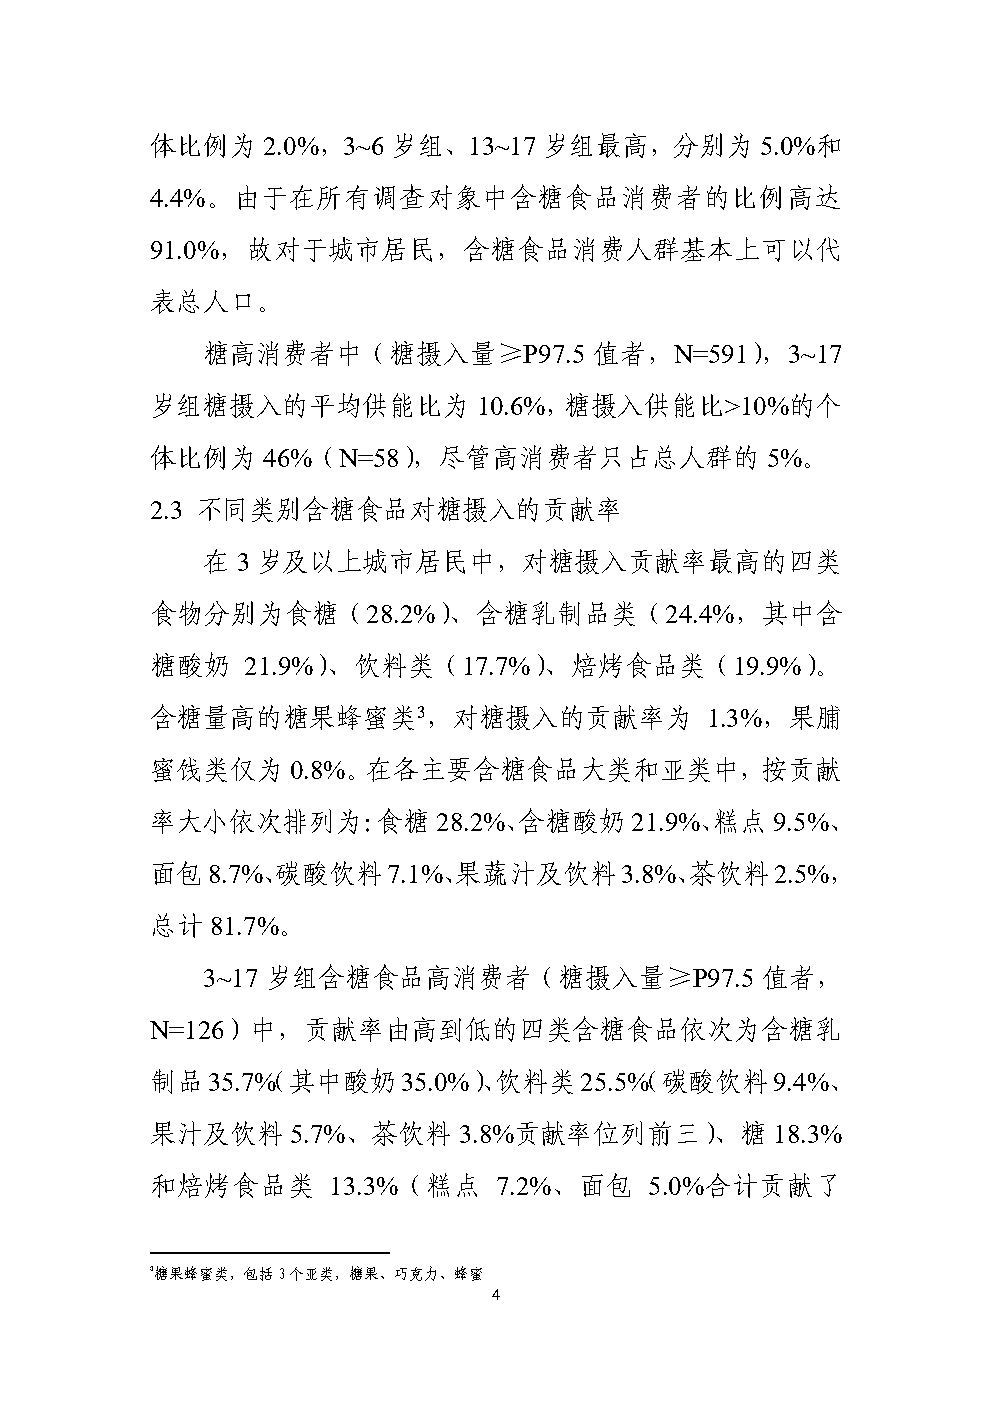 中国城市居民糖摄入水平及其风险评估_Page4.png